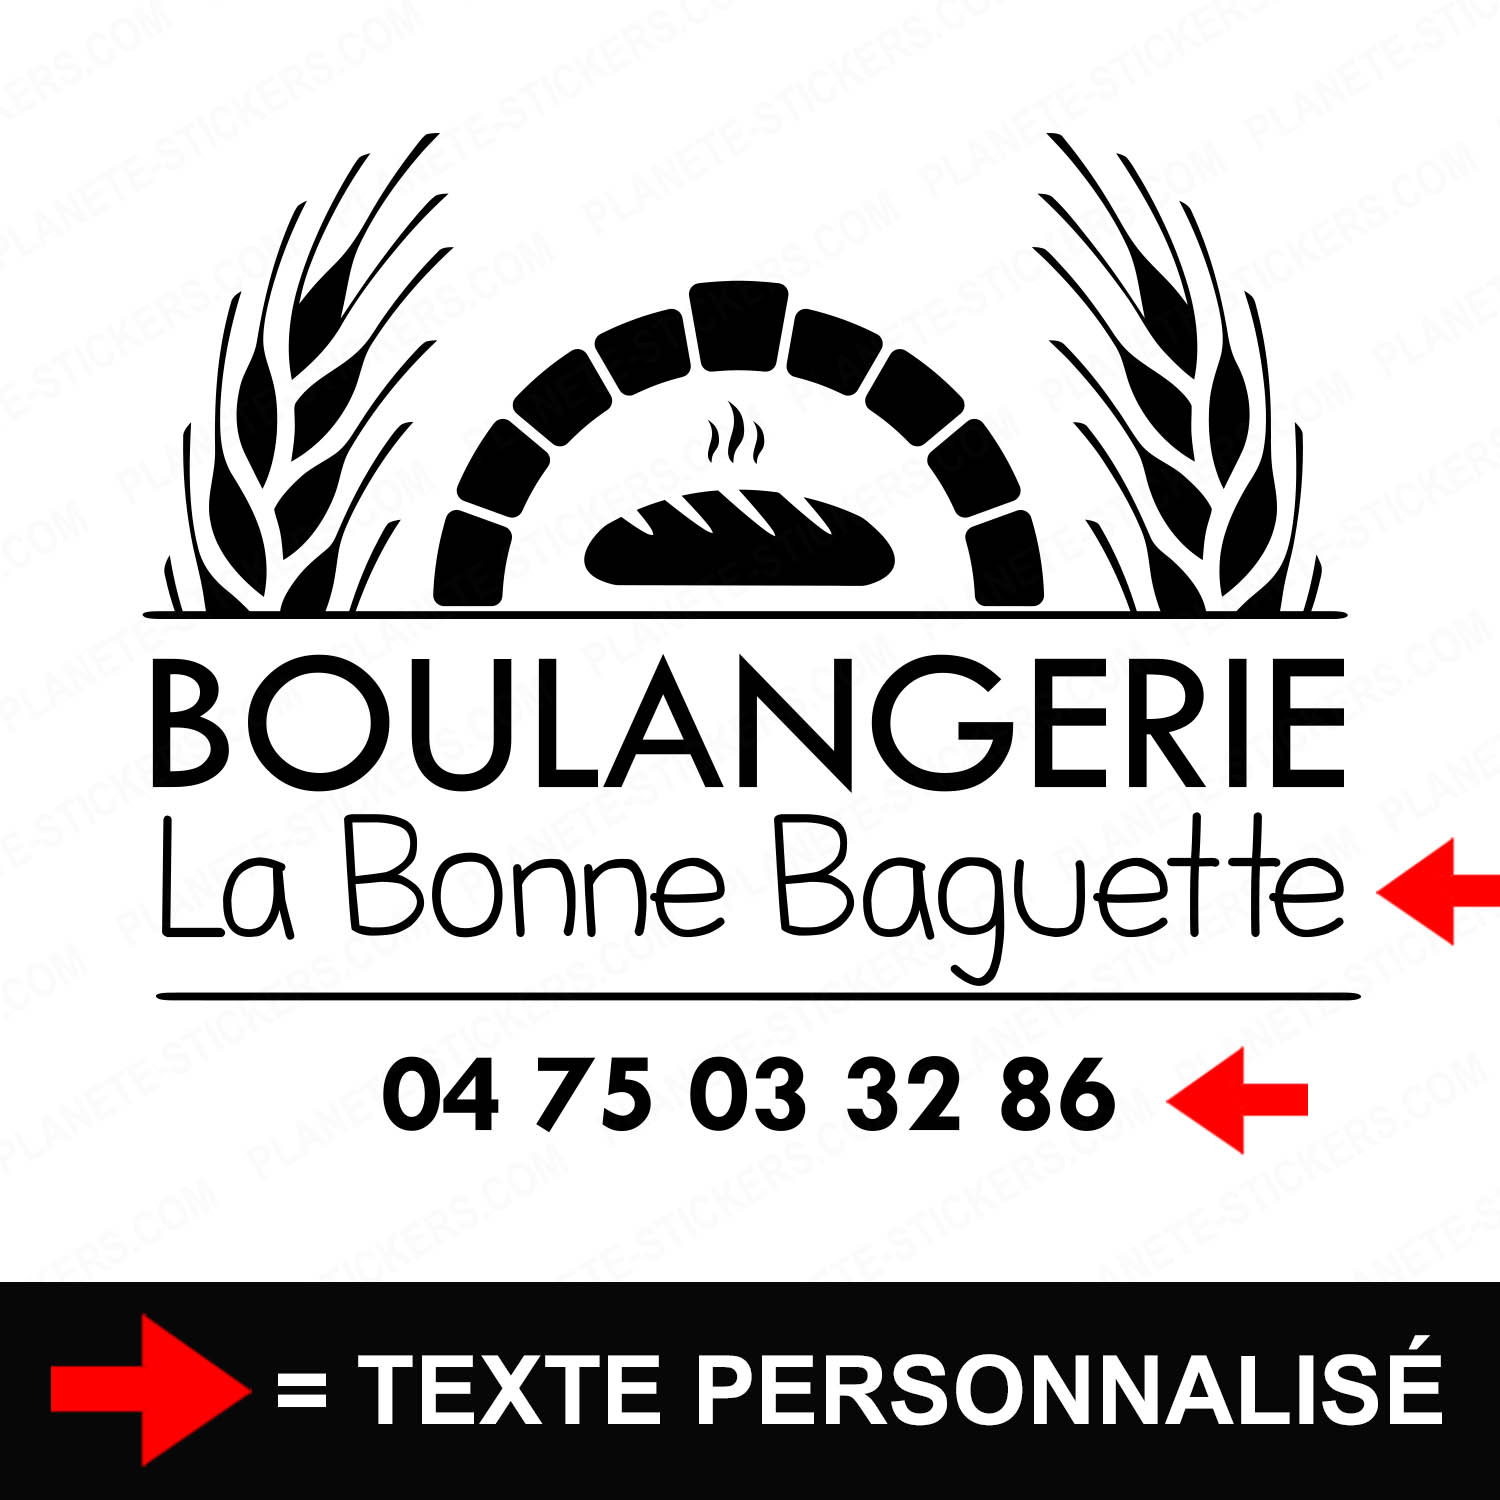 ref5boulangerievitrine-stickers-boulangerie-vitrine-sticker-personnalisé-autocollant-boutique-pro-boulanger-baguette-professionnel-2